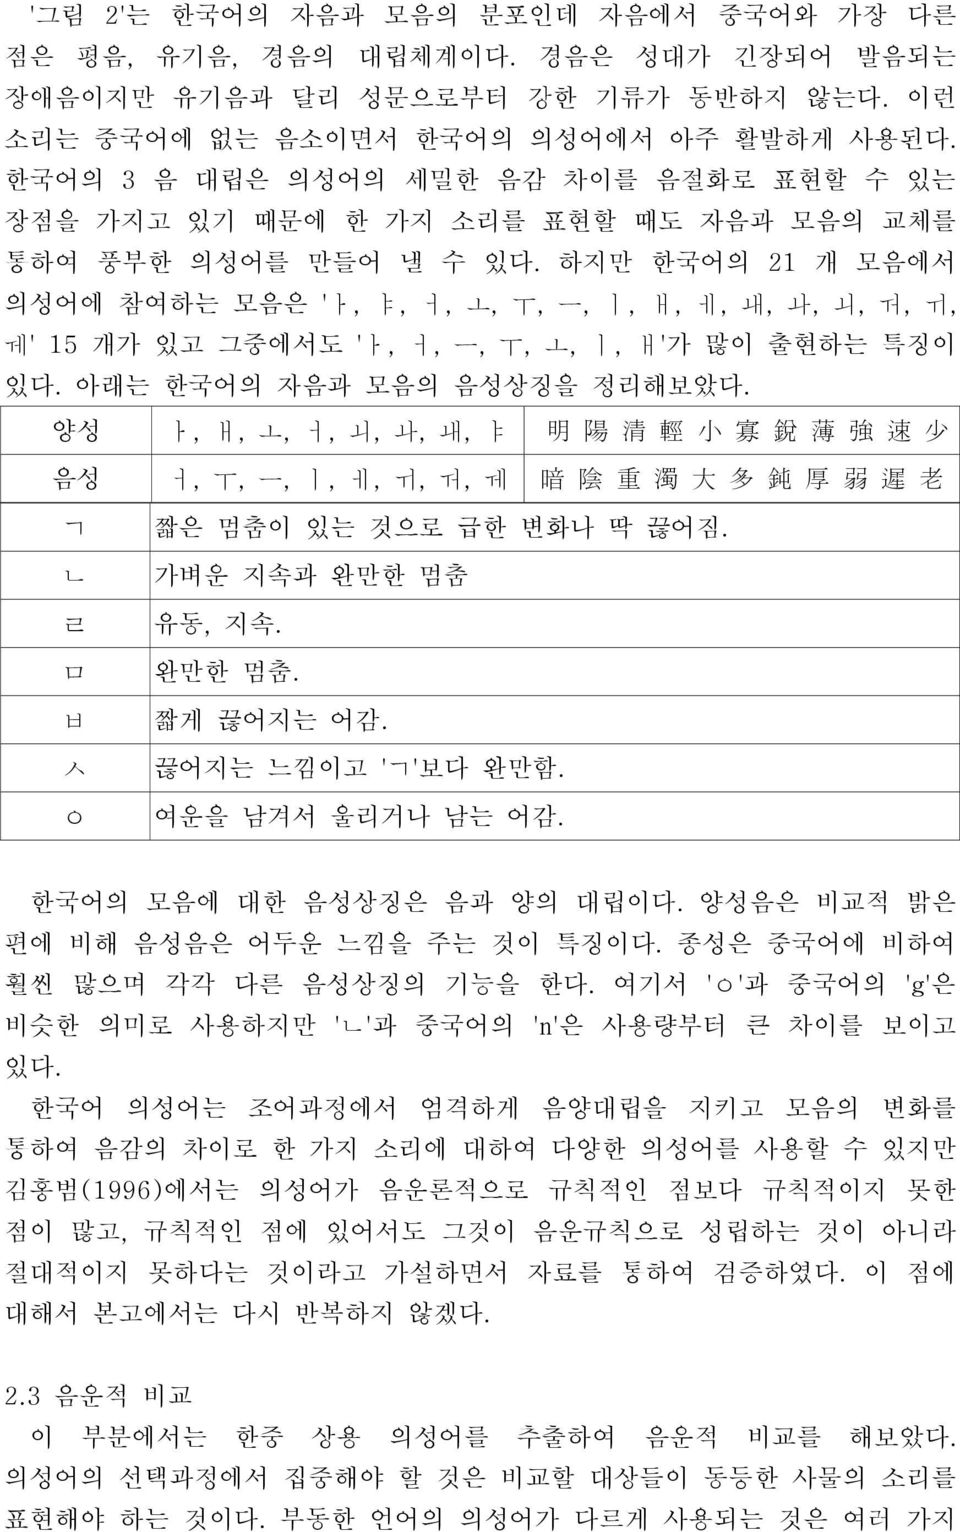 하지만 한국어의 21 개 모음에서 의성어에 참여하는 모음은 'ㅏ, ㅑ, ㅓ, ㅗ, ㅜ, ㅡ, ㅣ, ㅐ, ㅔ, ㅙ, ㅘ, ㅚ, ㅝ, ㅟ, ㅞ' 15 개가 있고 그중에서도 'ㅏ, ㅓ, ㅡ, ㅜ, ㅗ, ㅣ, ㅐ'가 많이 출현하는 특징이 있다. 아래는 한국어의 자음과 모음의 음성상징을 정리해보았다.